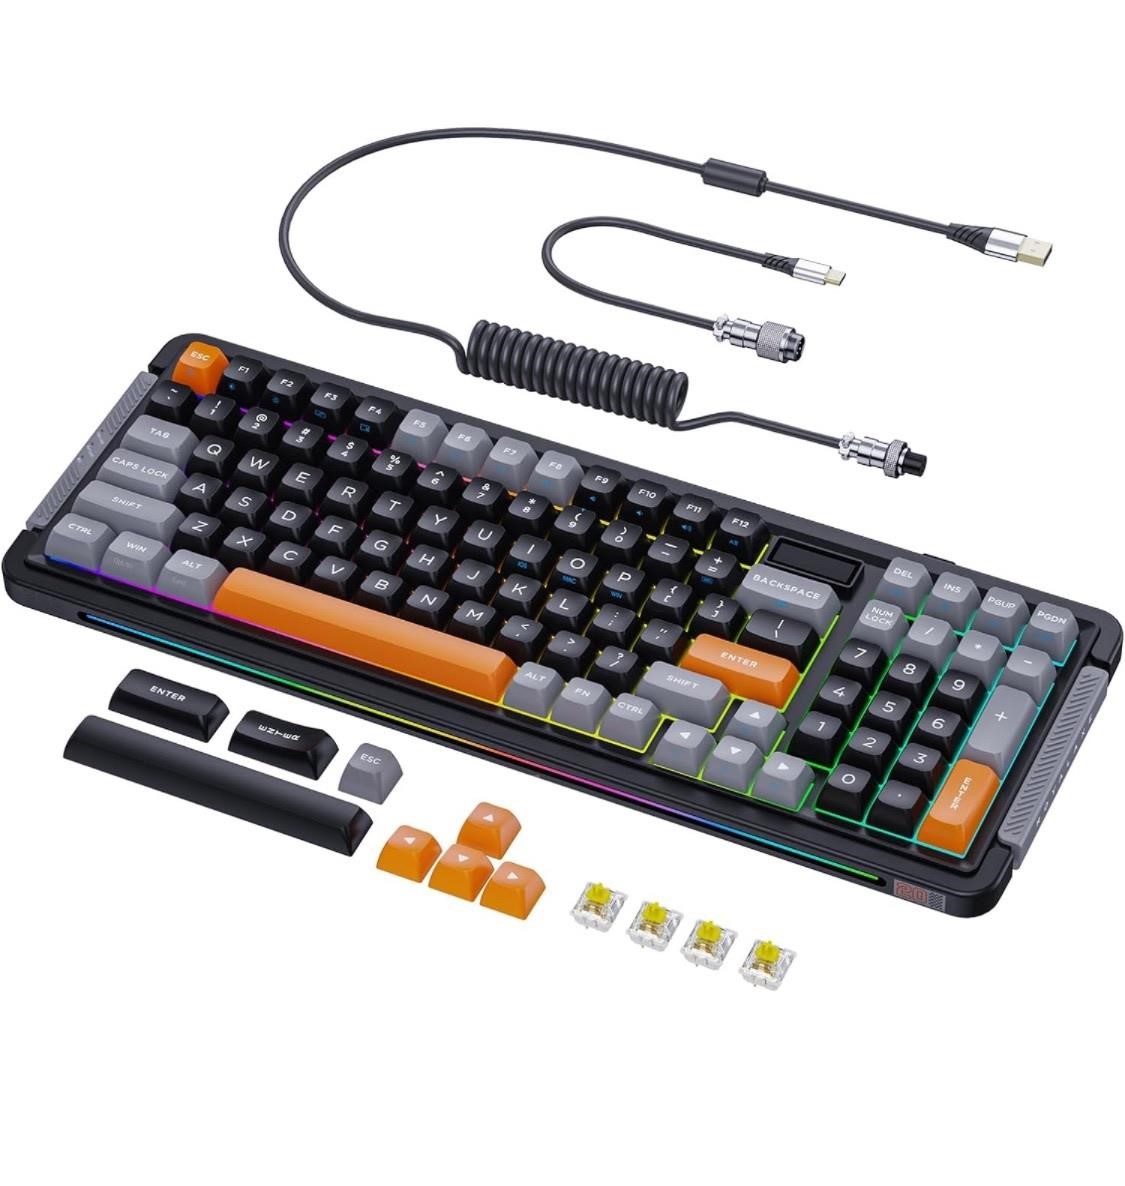 $130 L98 Wireless Mechanical Keyboard